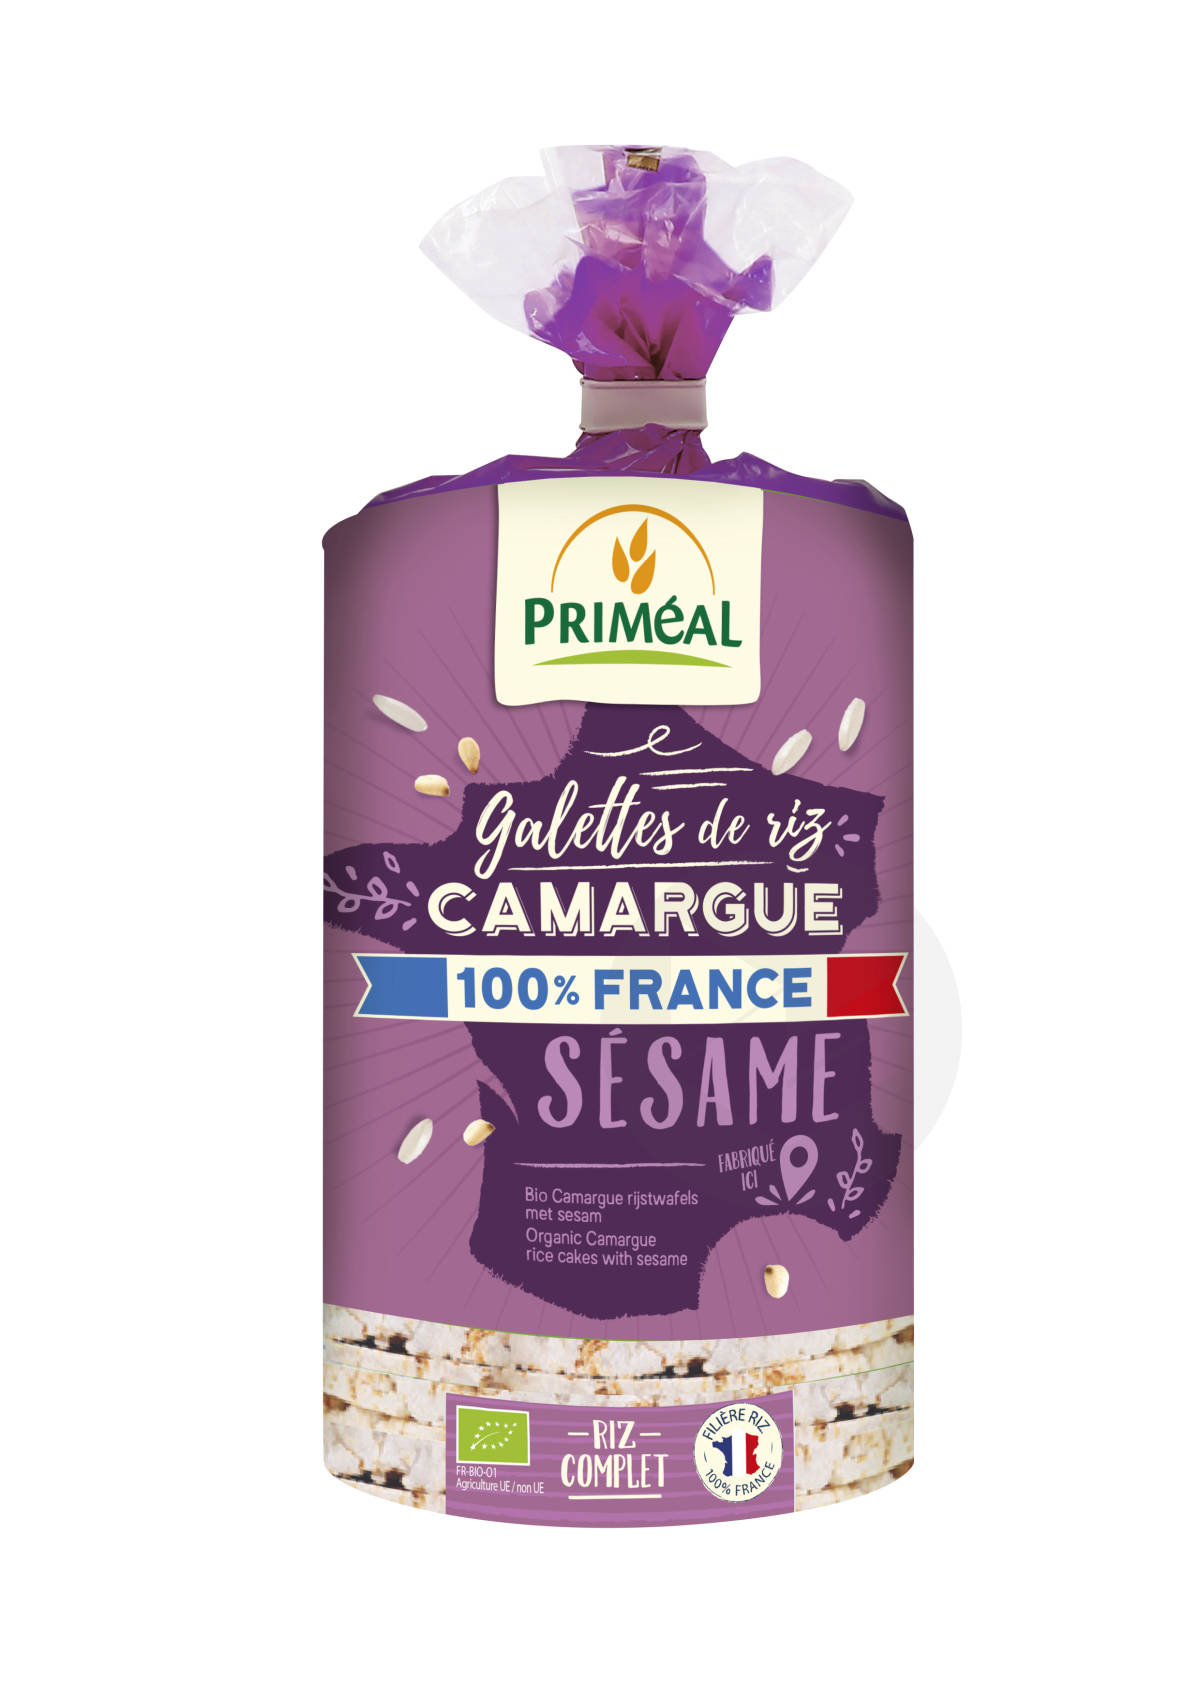 Galettes de riz de Camargue sesame 130g